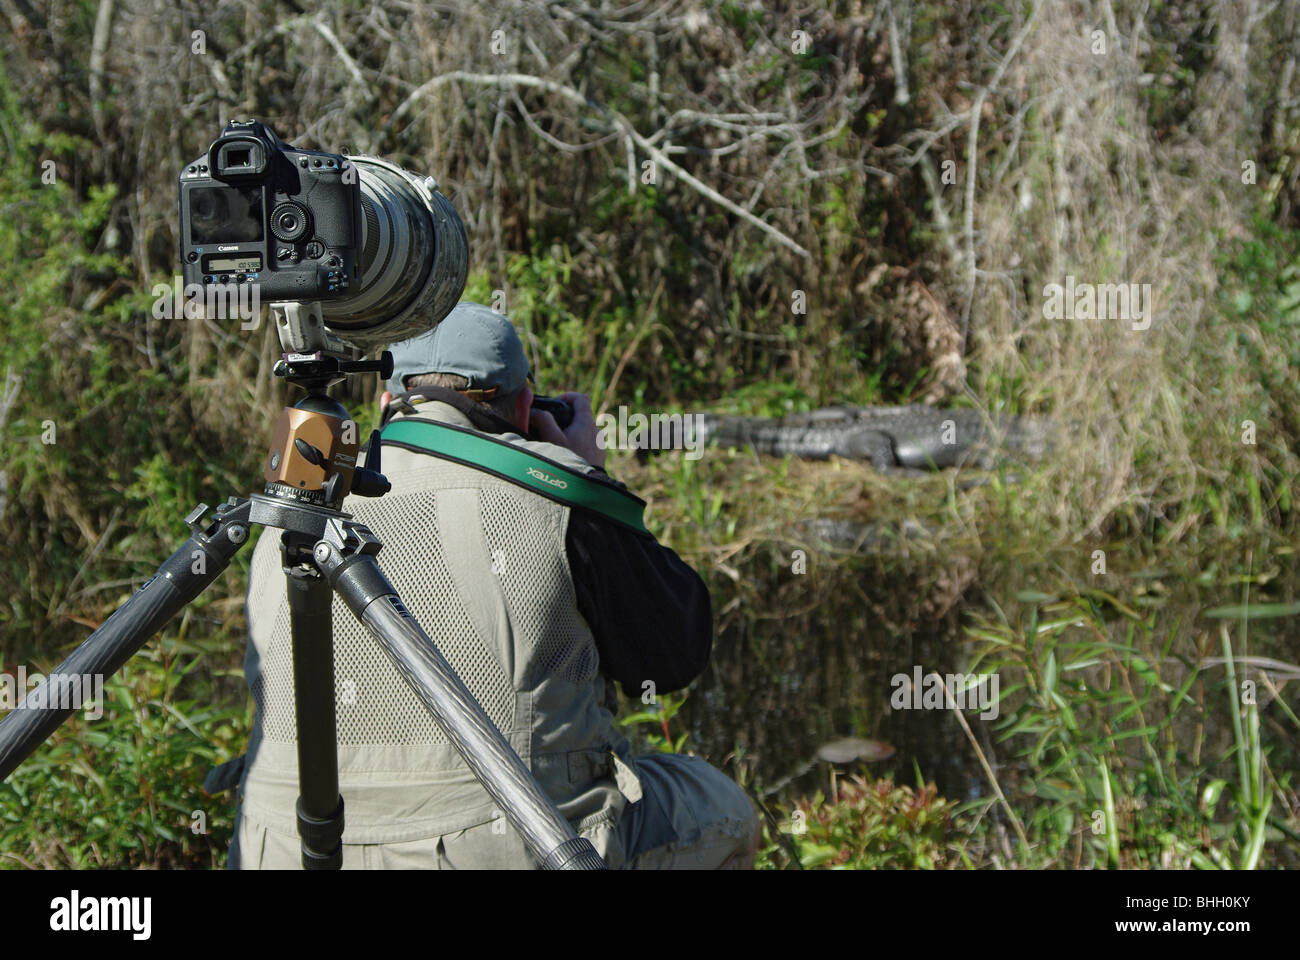 Photographe de la nature, prendre des photos d'un alligator dans le parc national des Everglades ; Canon Mark appareil photo avec objectif long sur un trépied est en premier plan. Banque D'Images